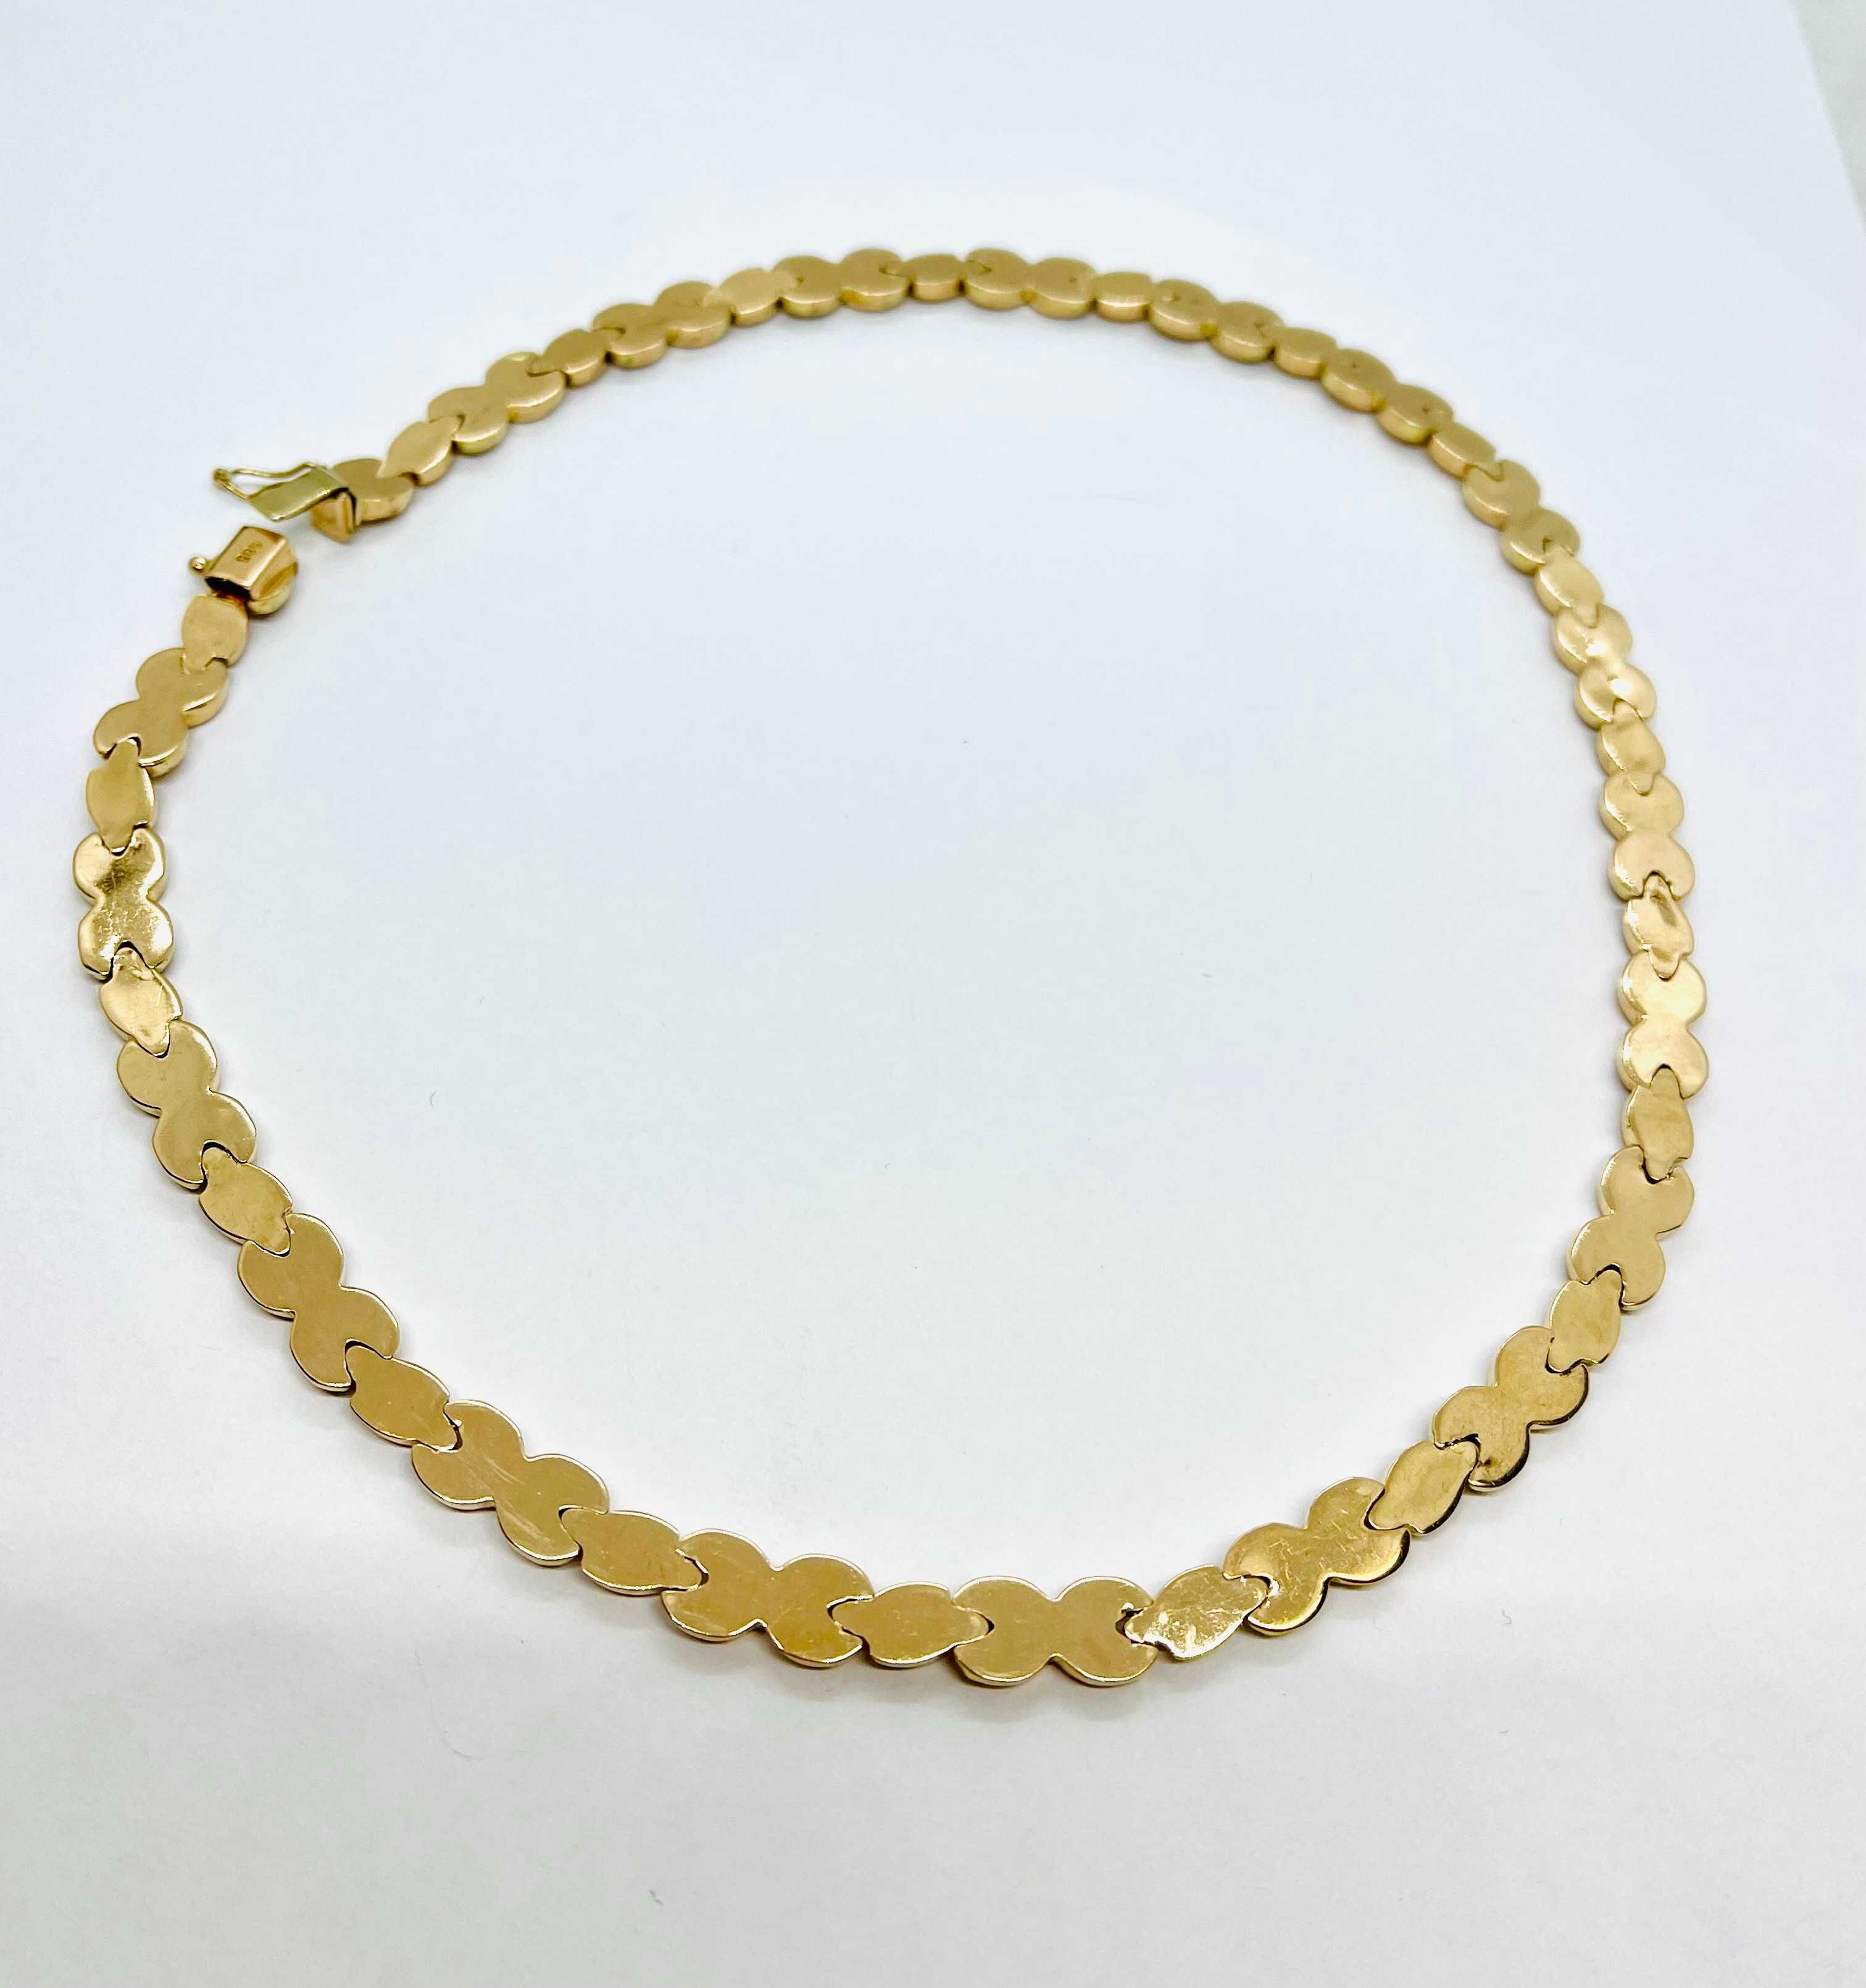 Łańcuszek złoty naszyjnik kolia złota pr.585 -21,92 gram- STAN IDEALNY